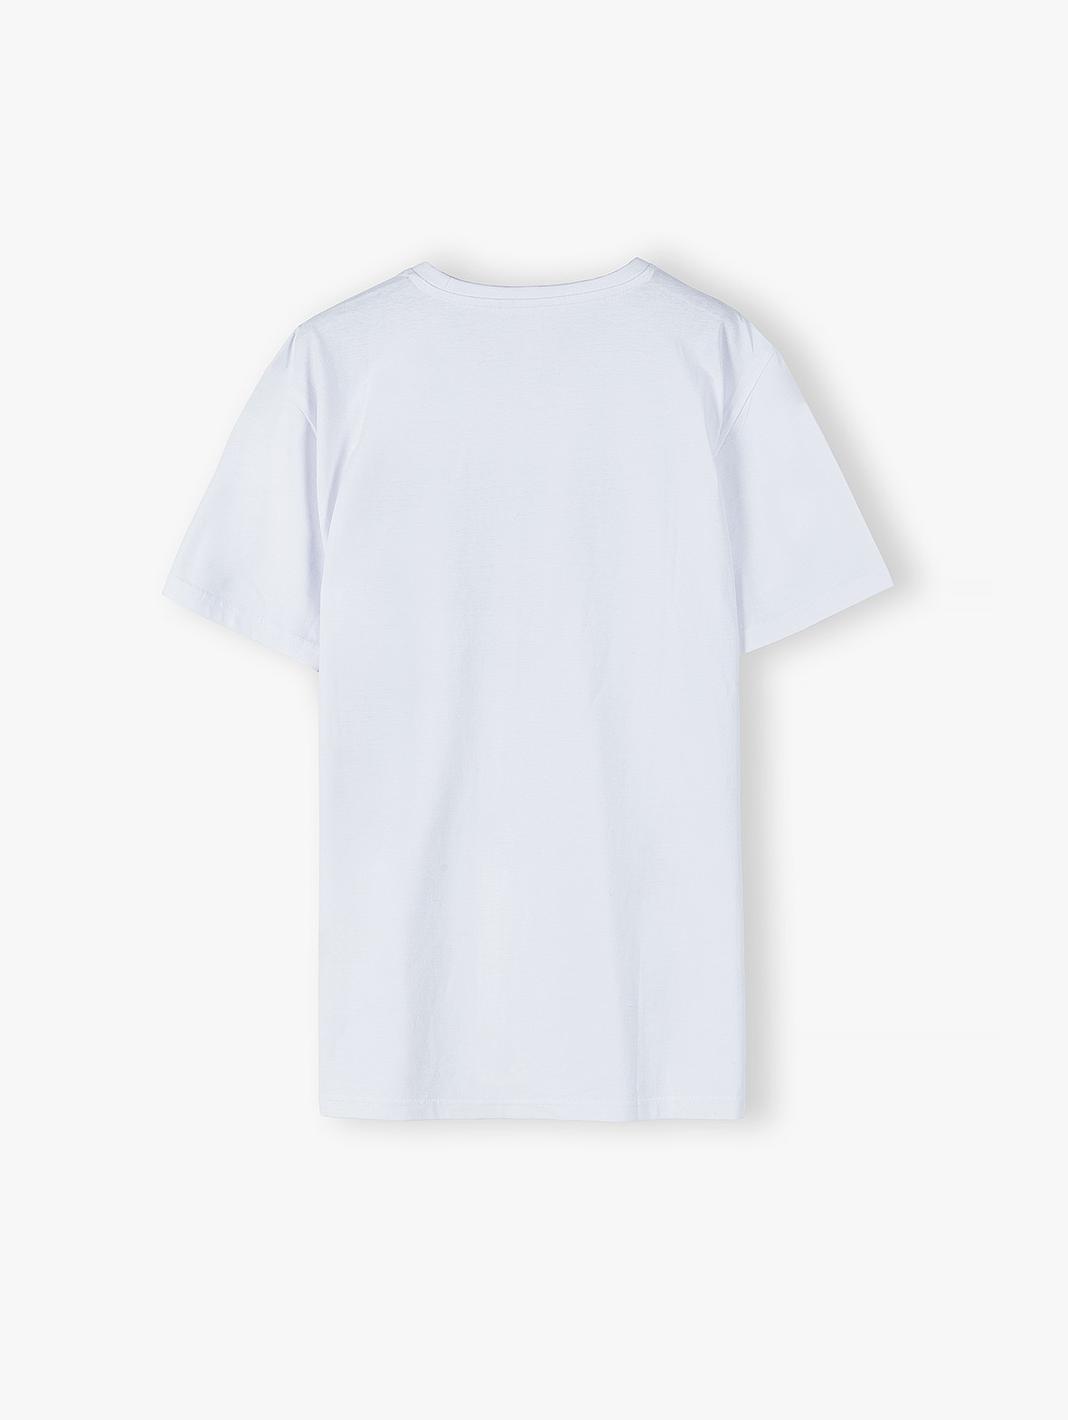 Bawełniany biały t-shirt męski - krótki rękaw Summer Paker- ubrania dla całej rodziny